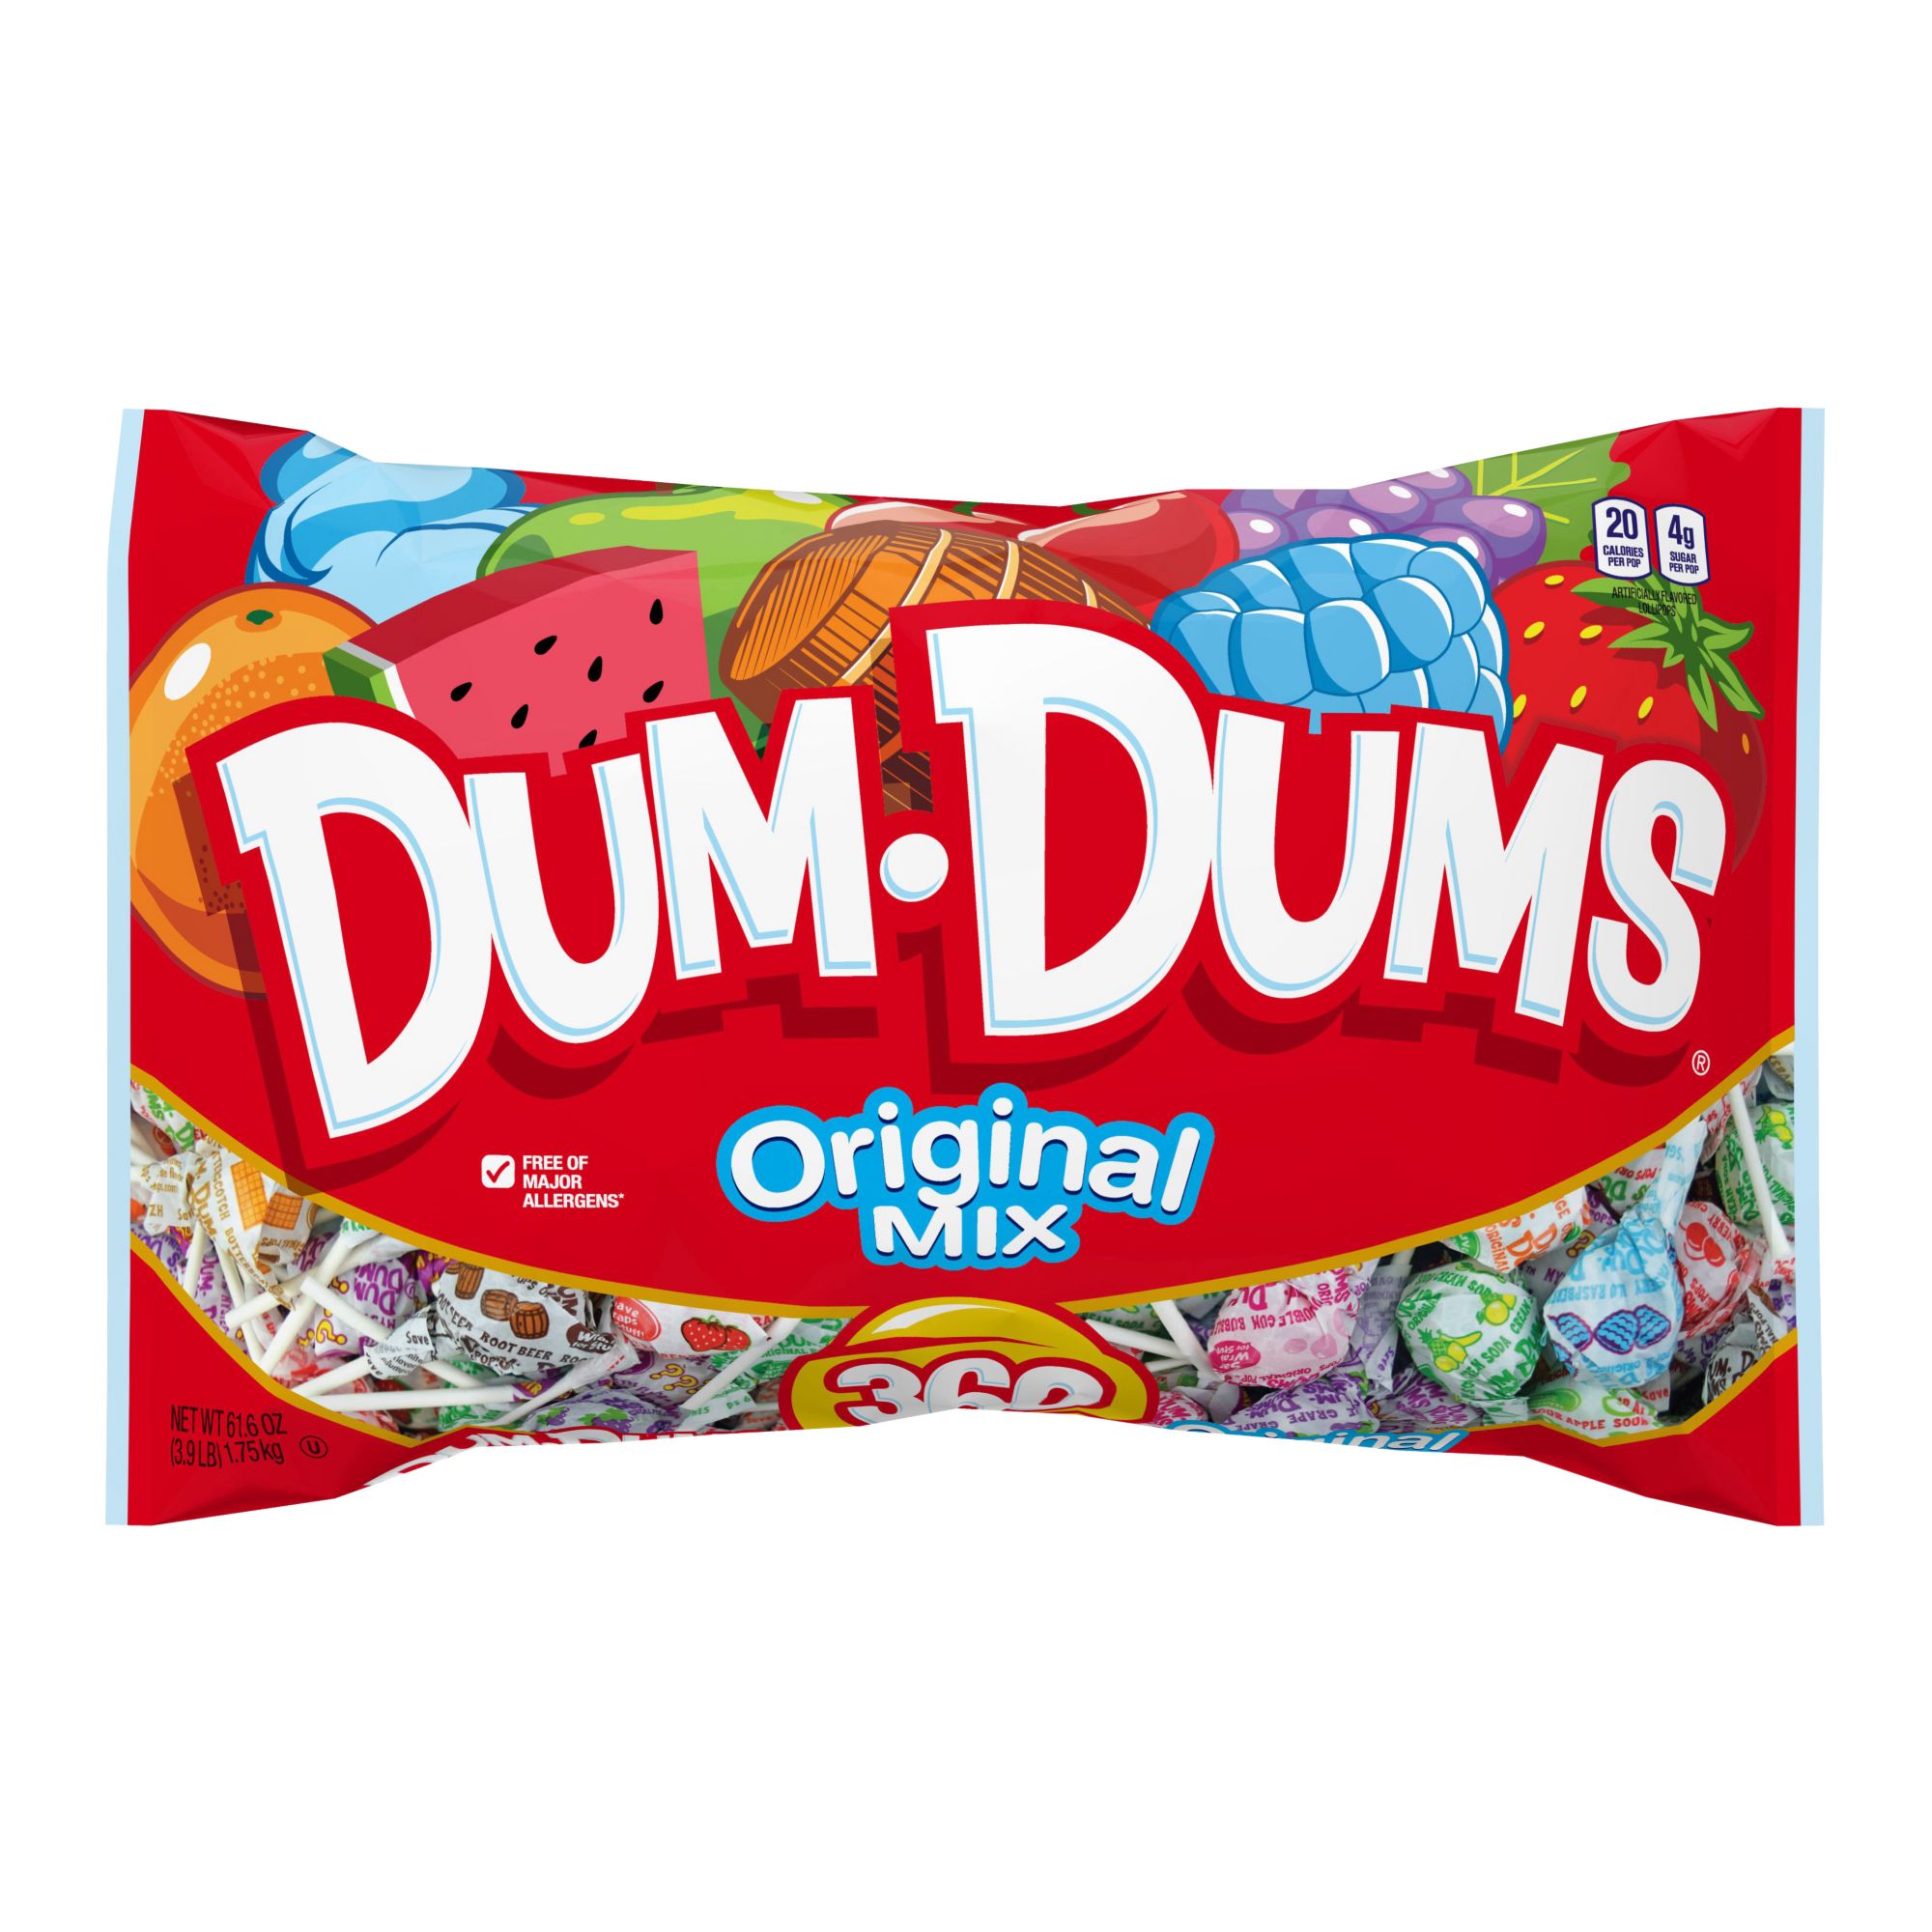 Dum Dums Lollipops